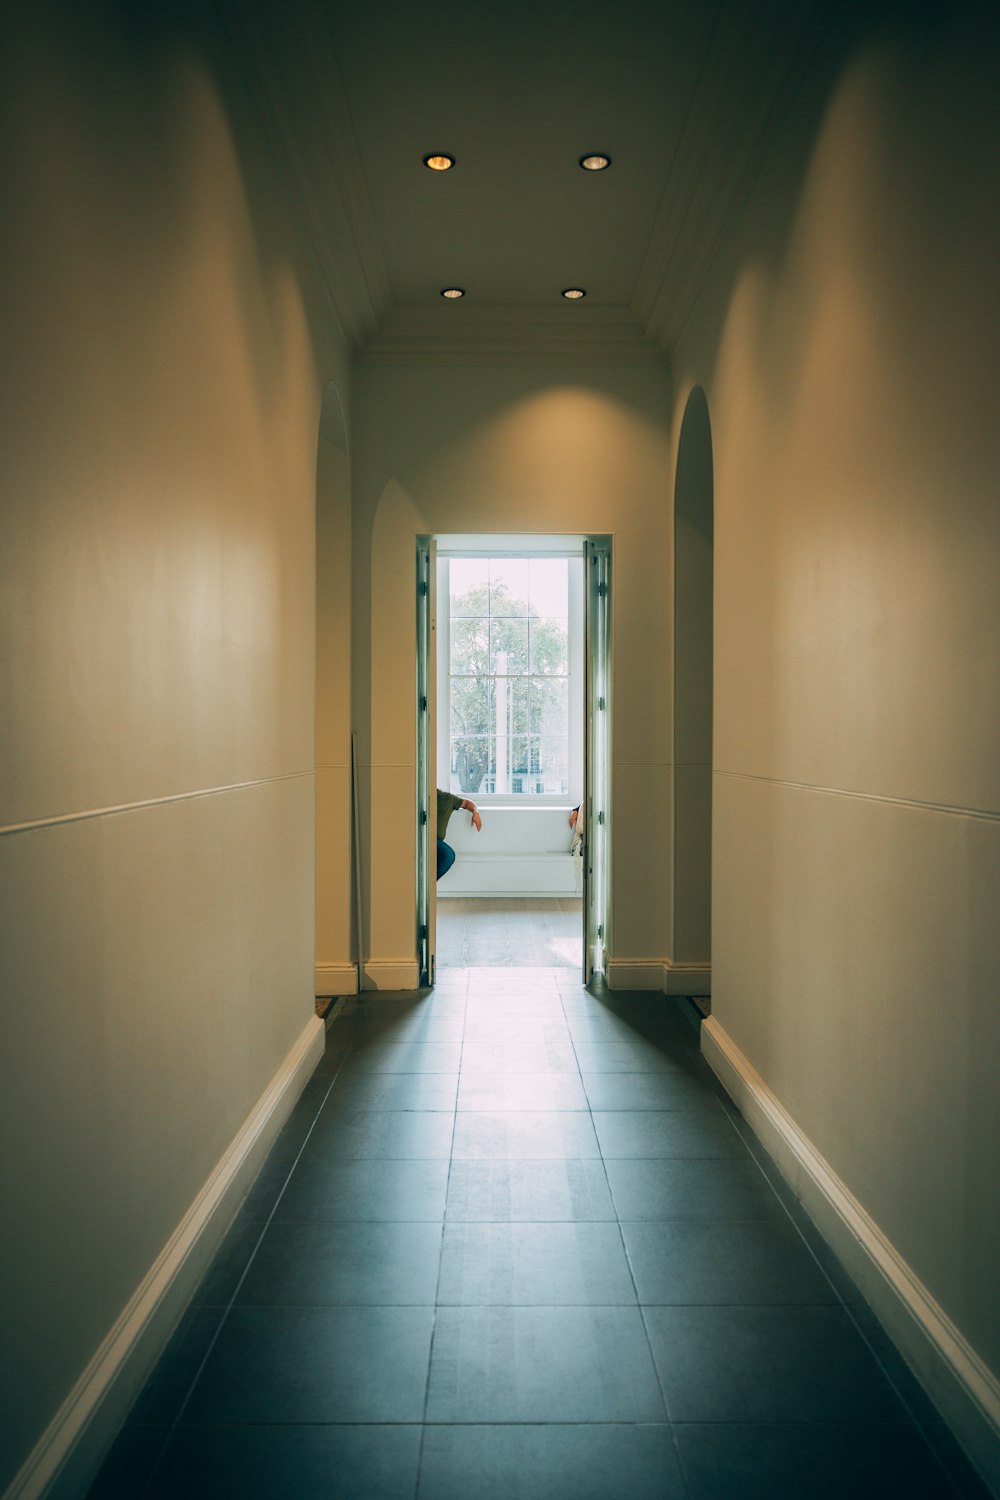 a hallway with a window